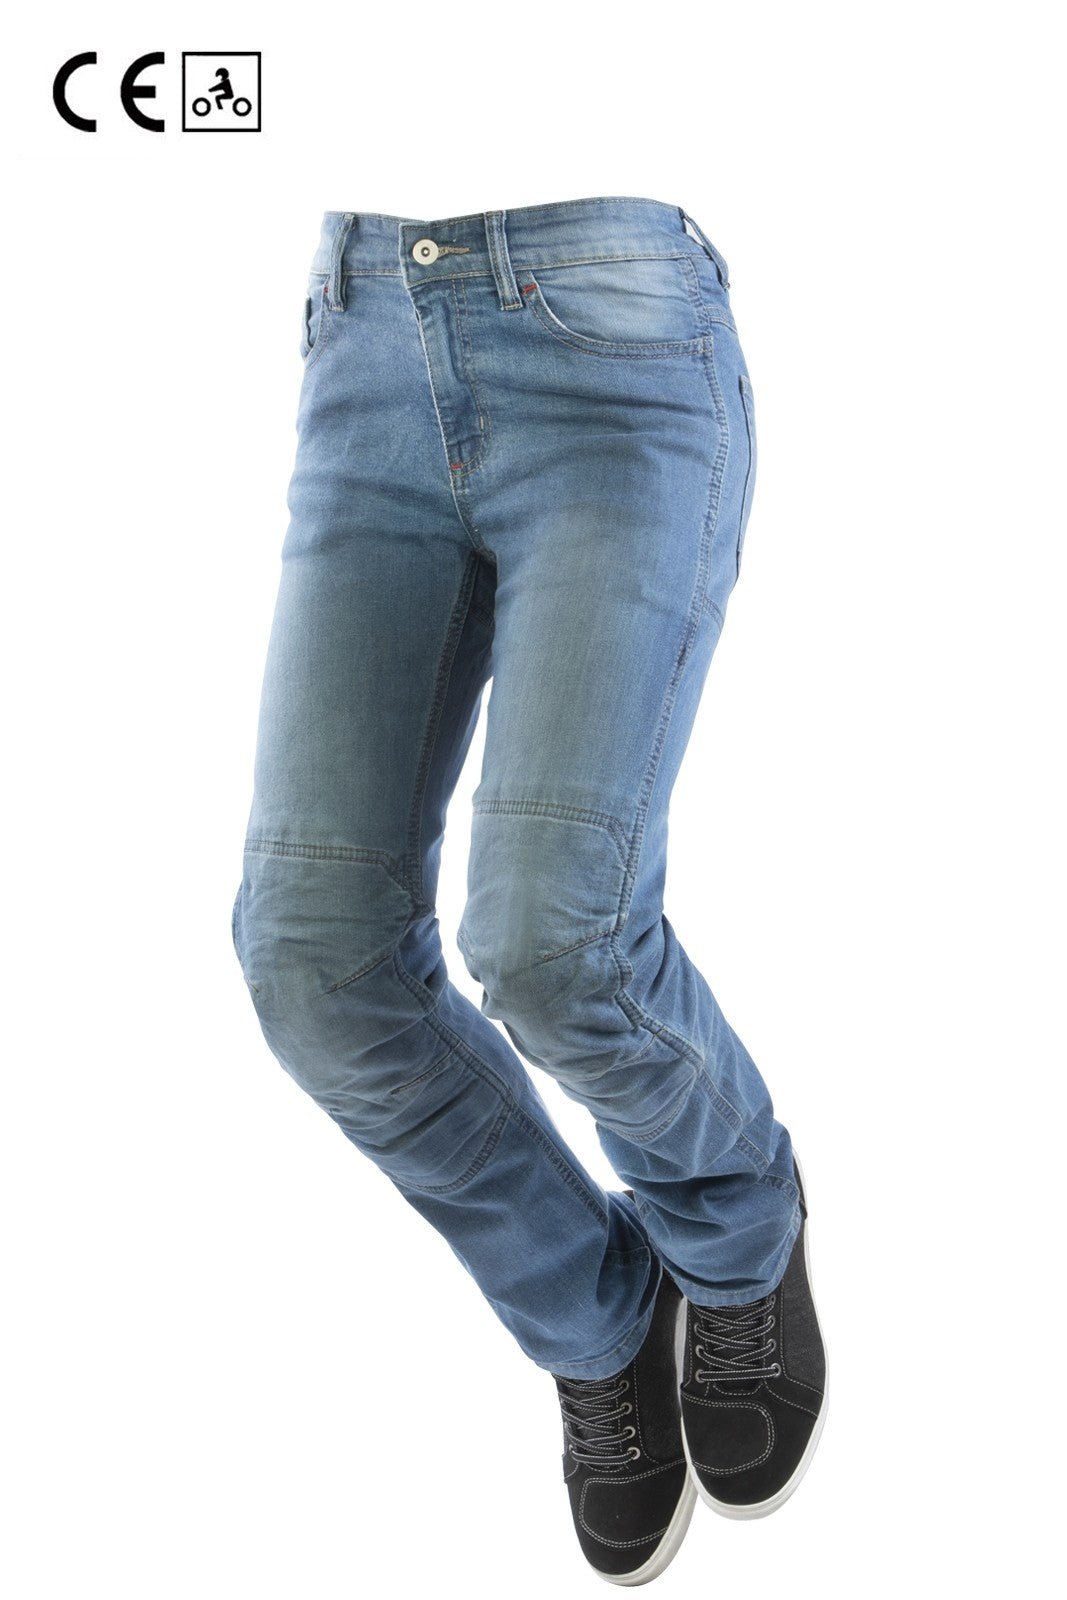 Jeans moto OJ STORM donna elasticizzato, impermeabile, aramidica e protezioni - OnTheRoad.shop - OJ